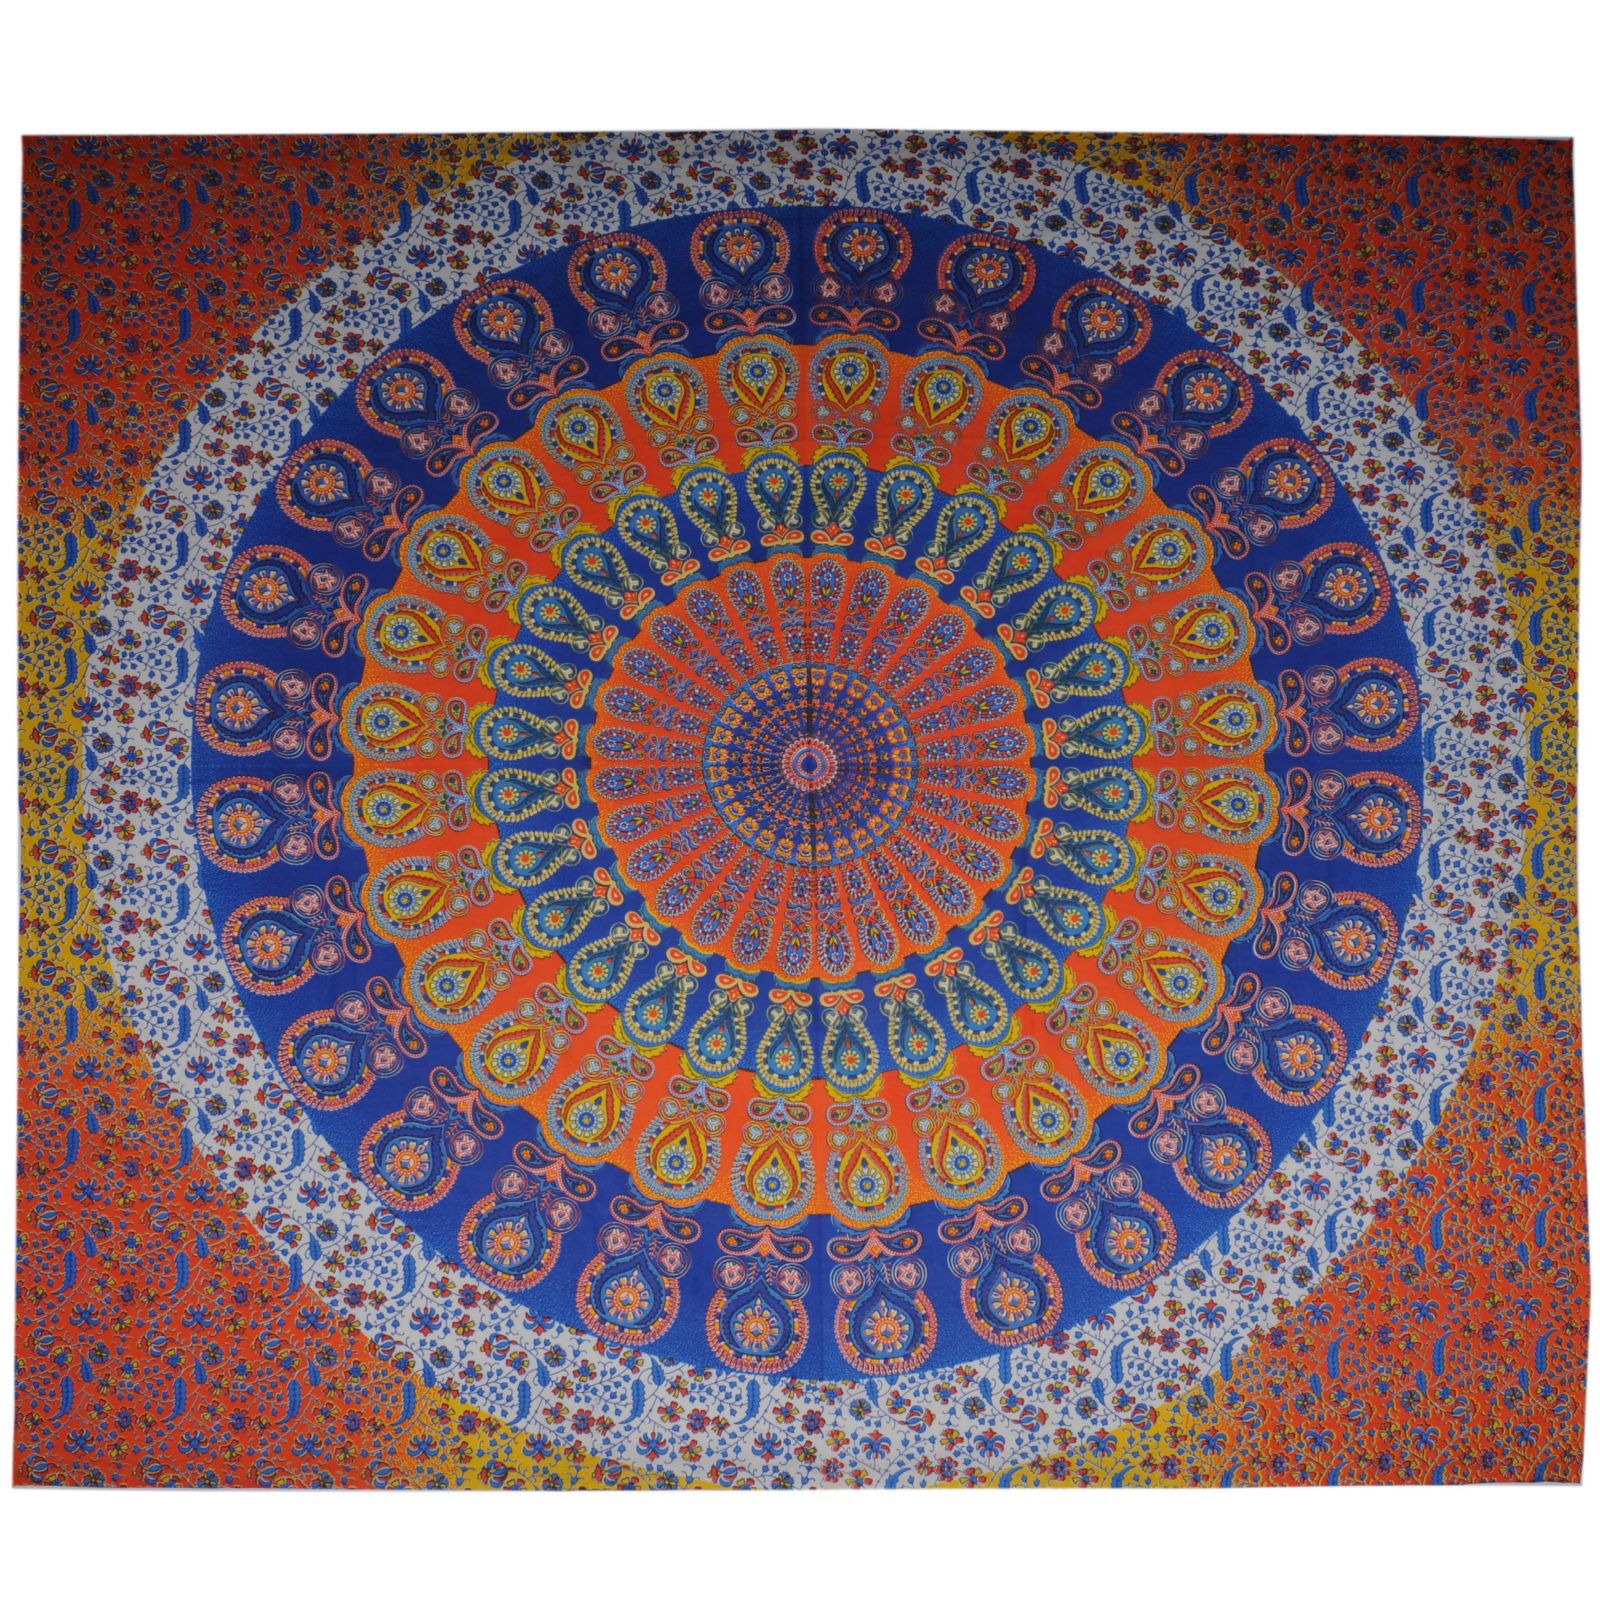 BOB Batik indický přehoz na postel Peacock oranžový modrý 230 x 210 cm bavlna. King size. Dvoulůžko. | SoNo spol. s r.o.